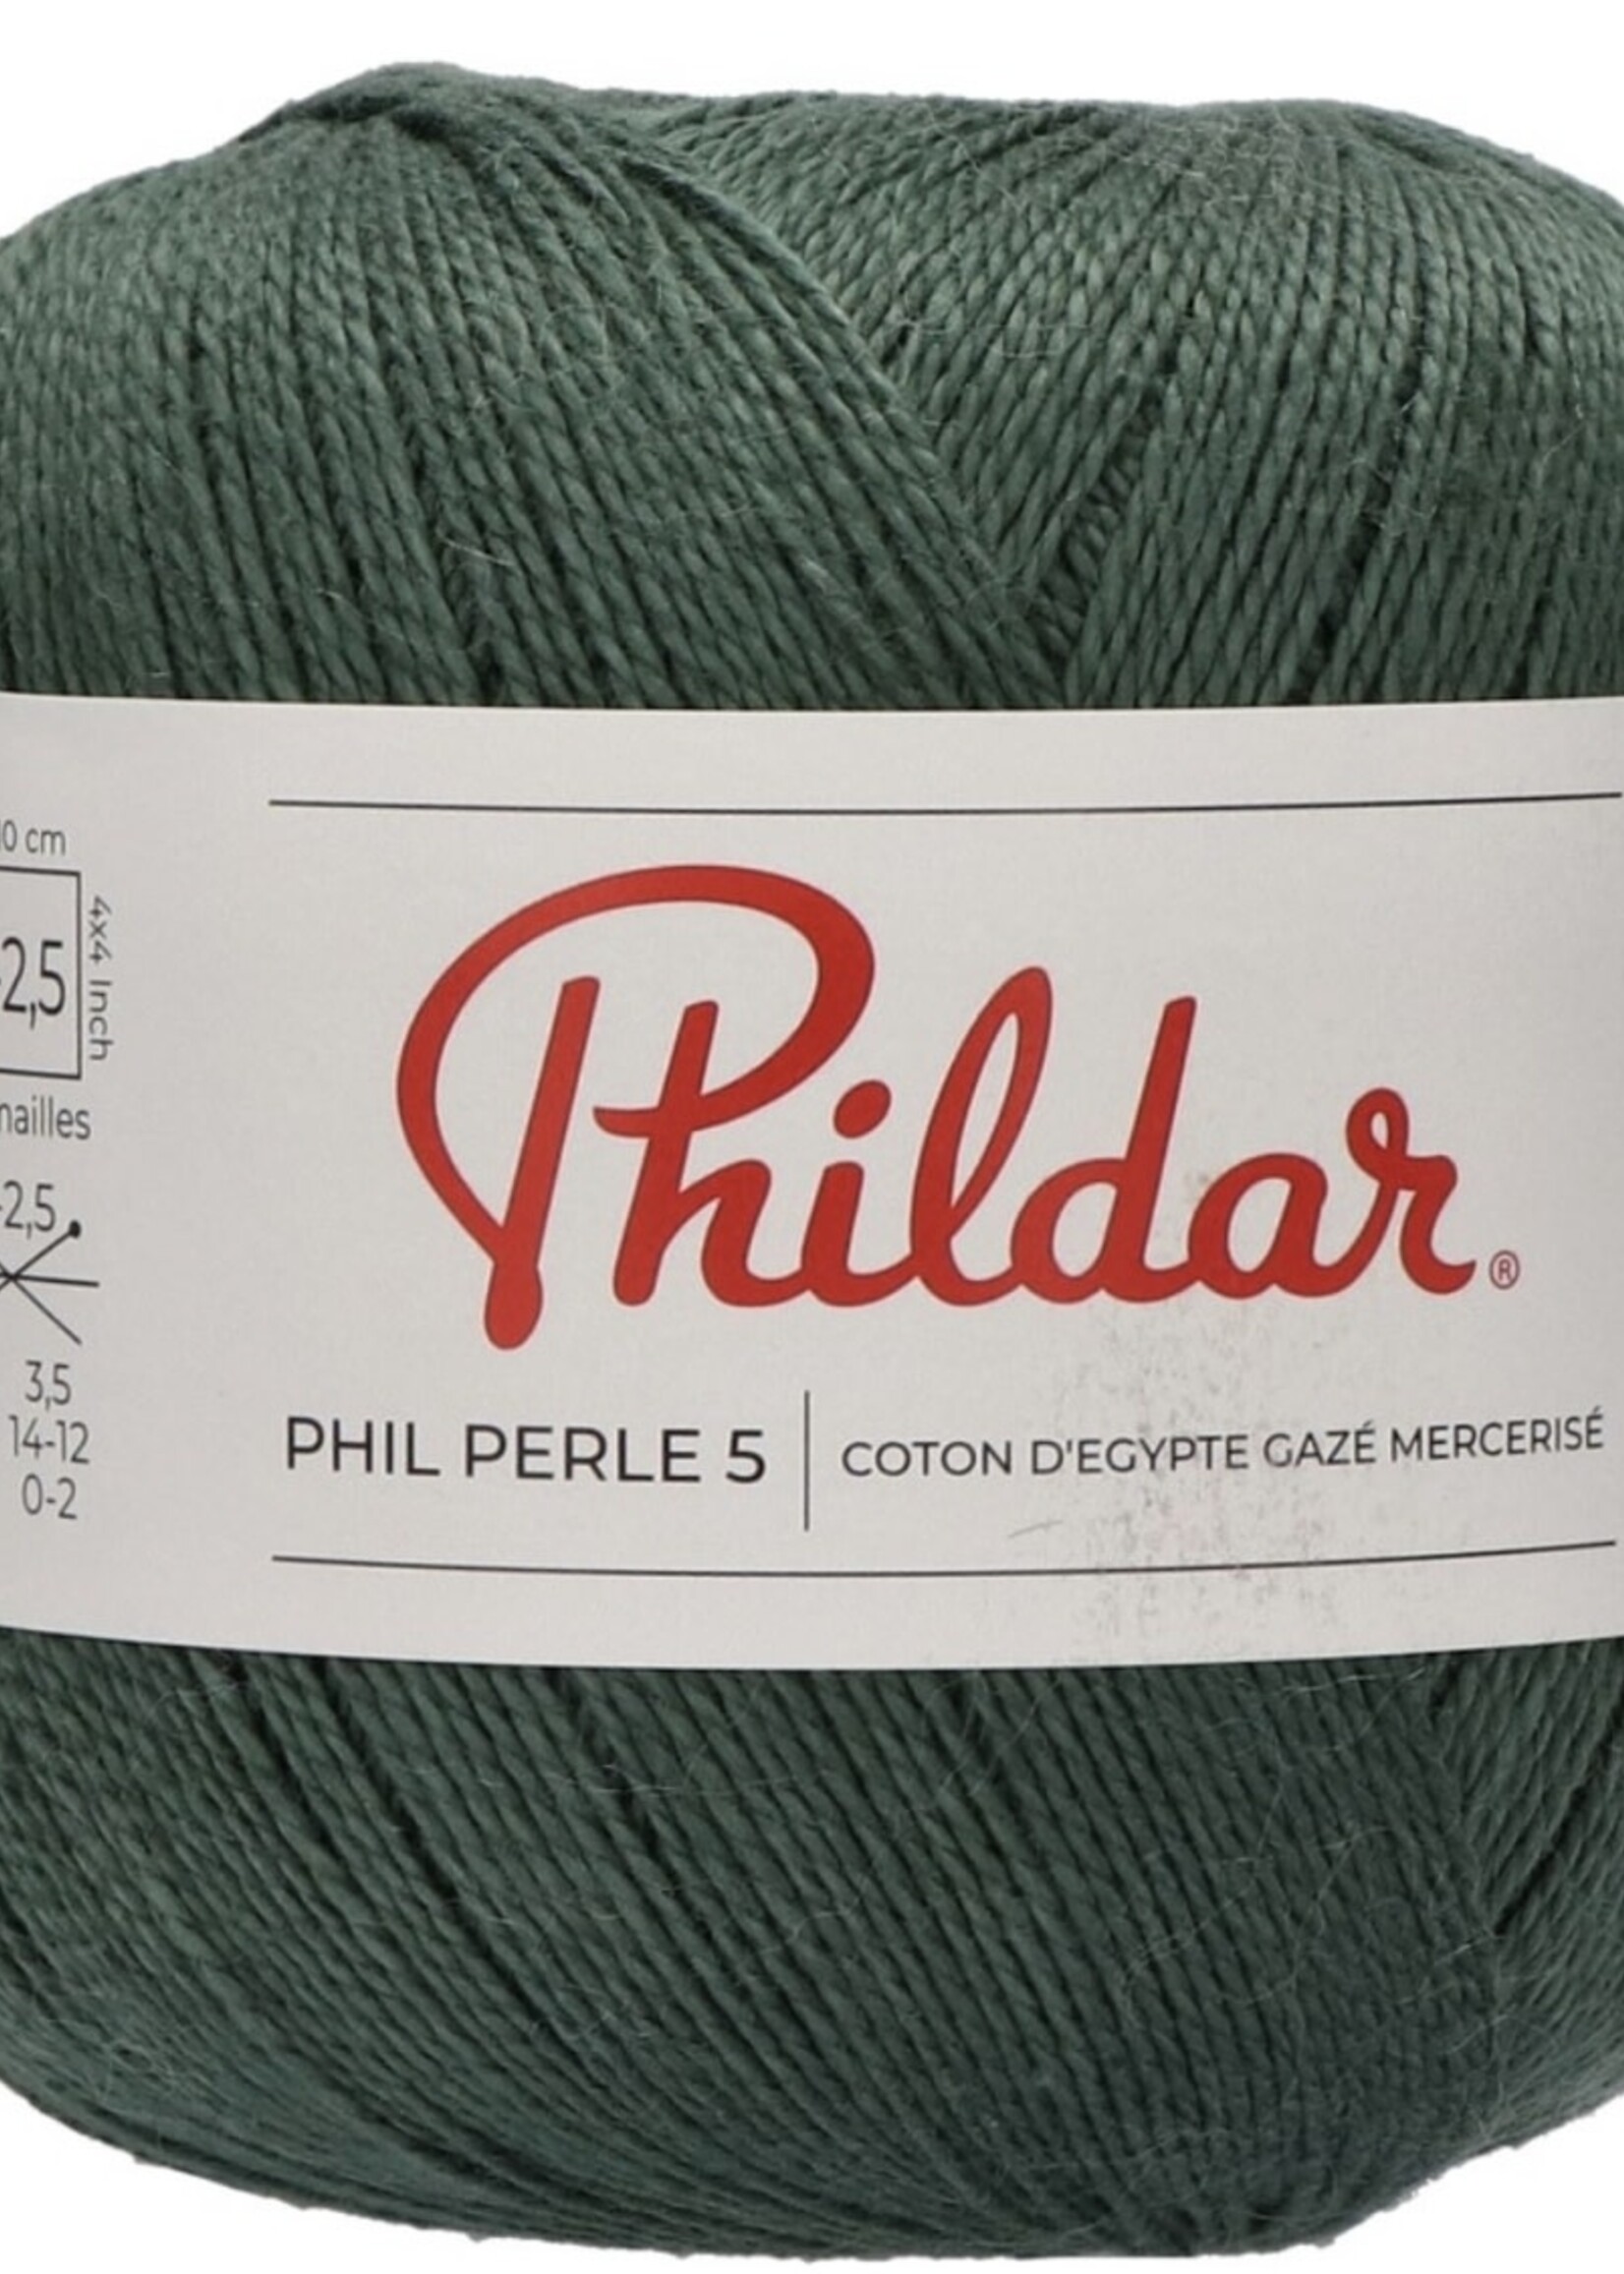 Phildar Phil Perle 5 - Phildar -Pin